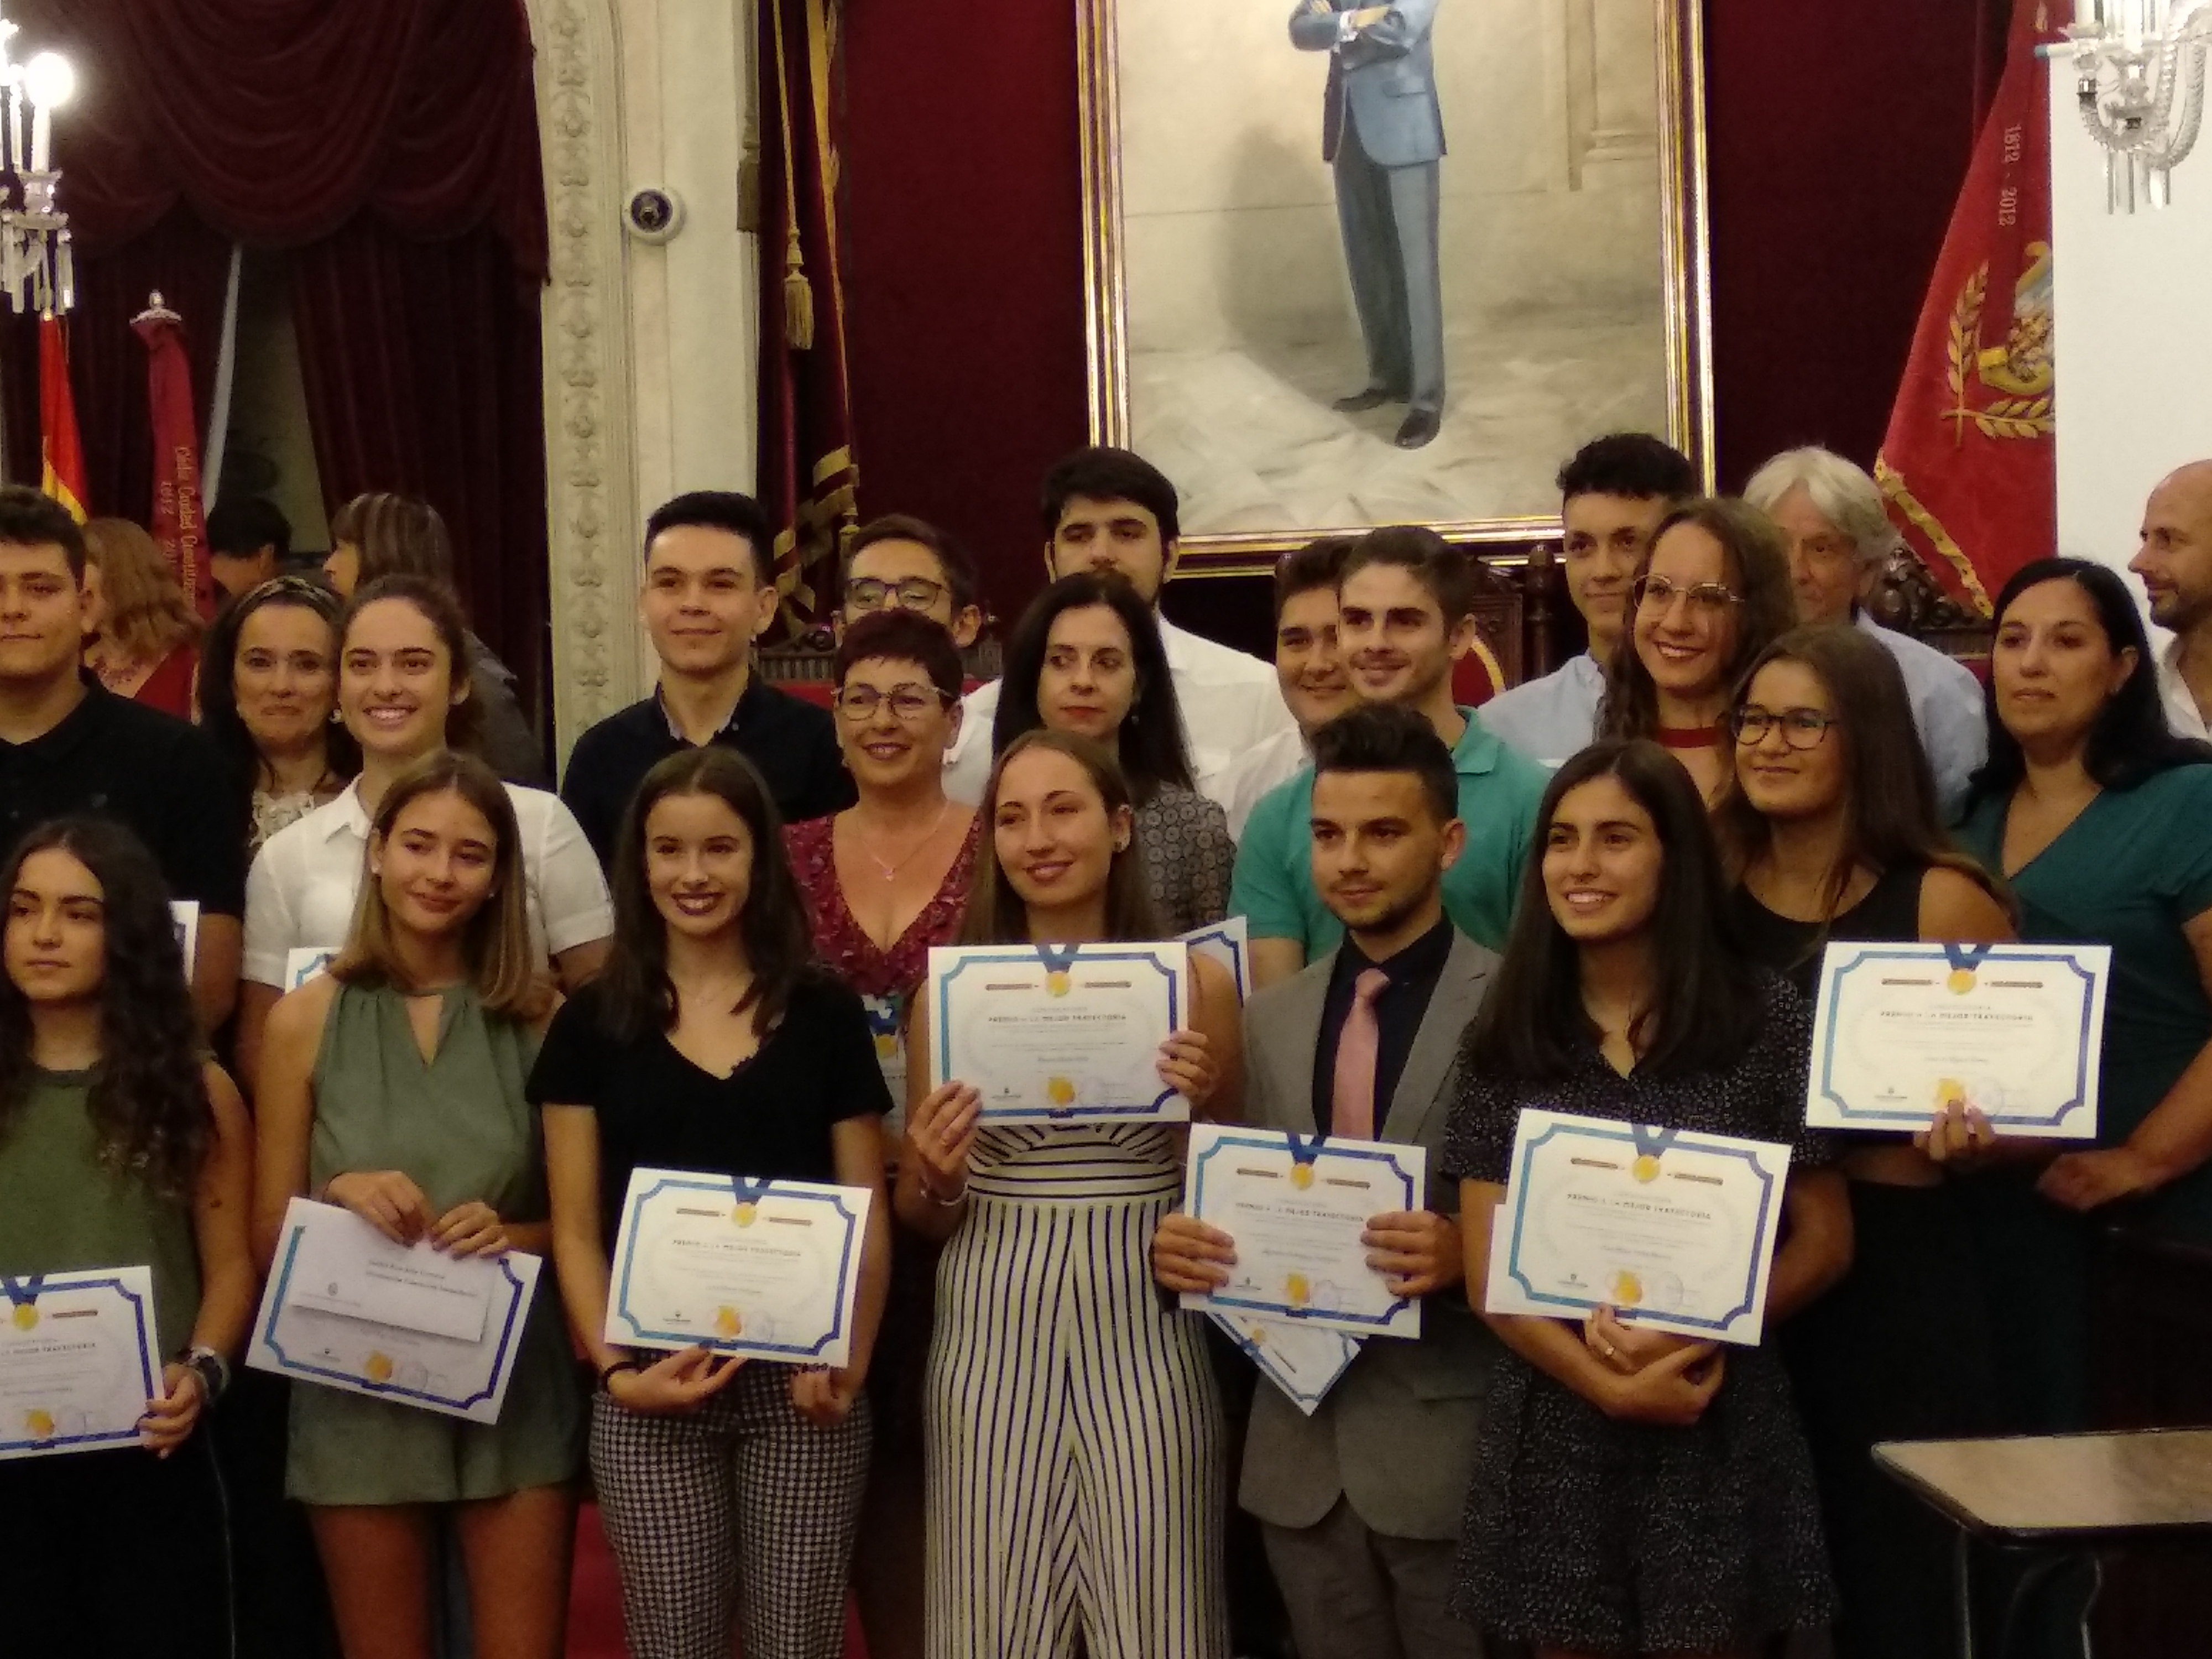 Representantes del colegio Amor de Dios en los Premios otorgados por el Ayuntamiento a la mejor trayectoria educativa durante 2017-2018